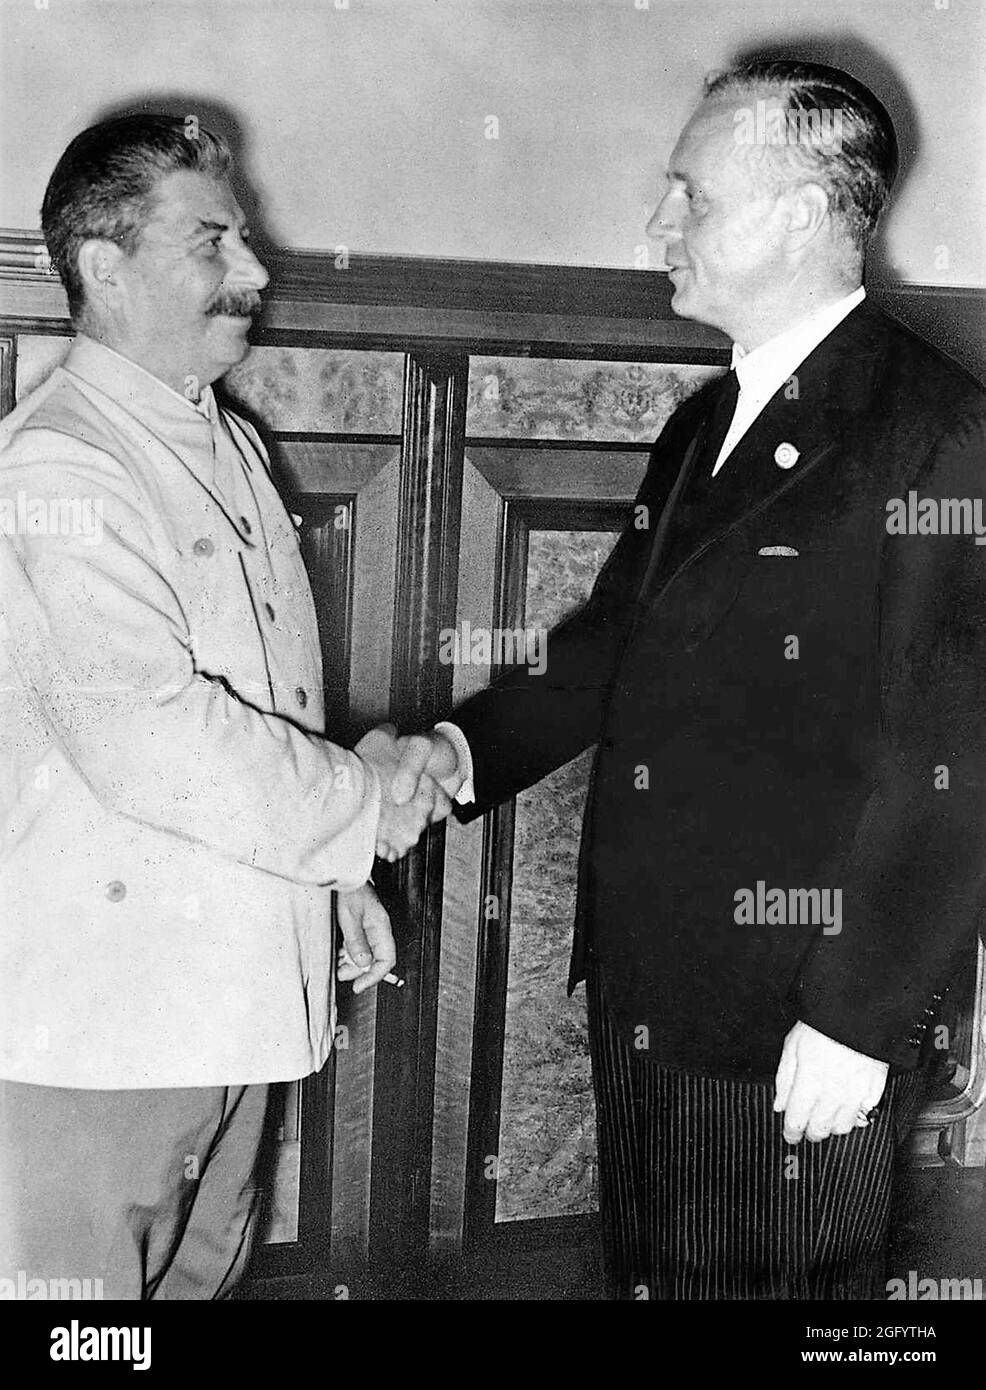 Joseph Stalin und der deutsche Außenminister Joachim von Ribbentrop schütteln sich die Hände nach Unterzeichnung des Freundschafts- und Grenzvertrags zwischen der UdSSR und Deutschland (auch bekannt als Nazi-Sowjet-Pakt oder Molotow-Ribbentrop-Pakt) Stockfoto